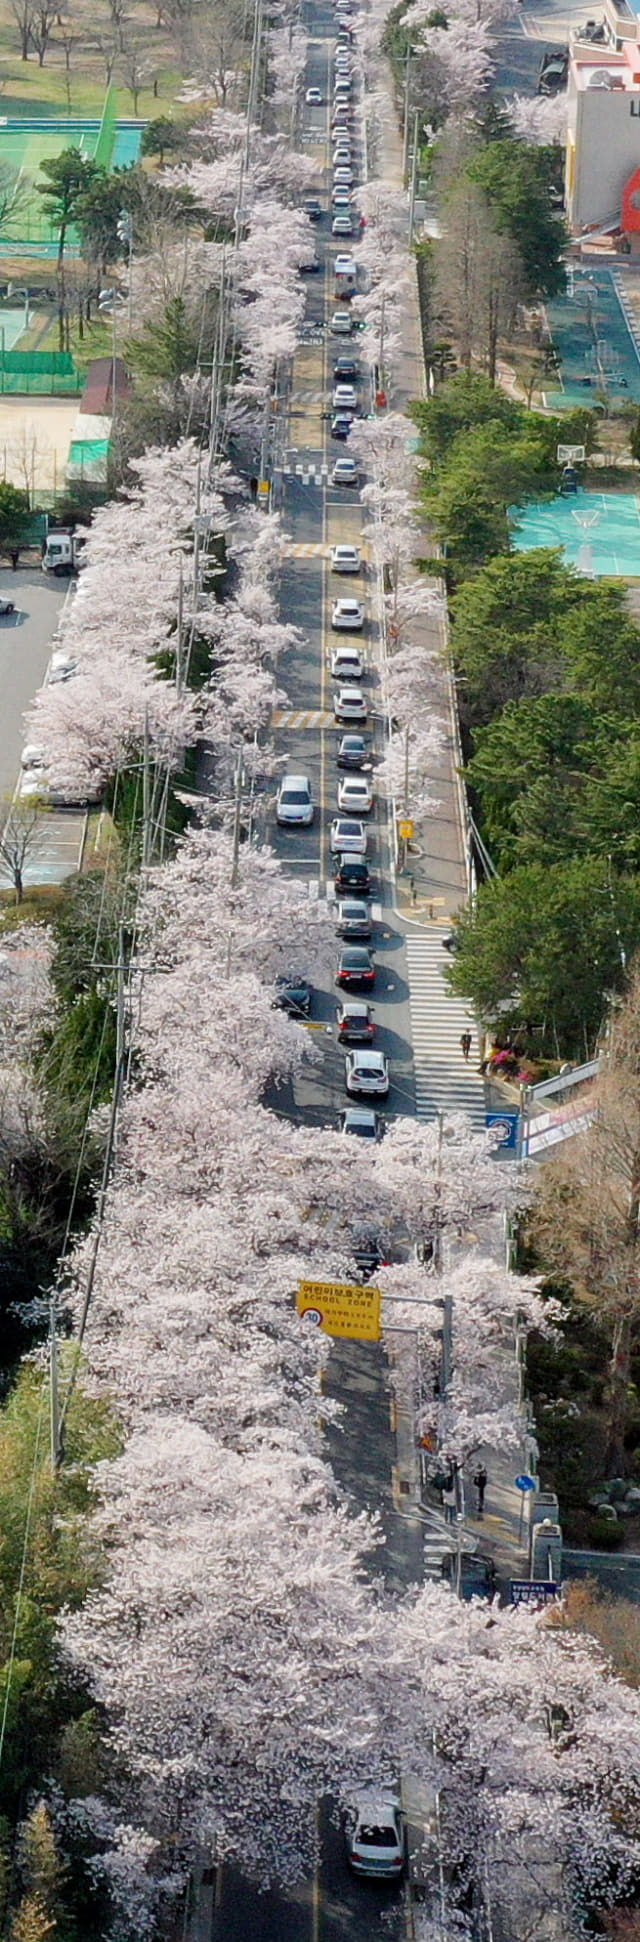 31일 오후 창원시 성산구 내동 교육단지내 벚꽃길이 벚꽃을 즐기려는 차량으로 붐비고 있다./김승권 기자/